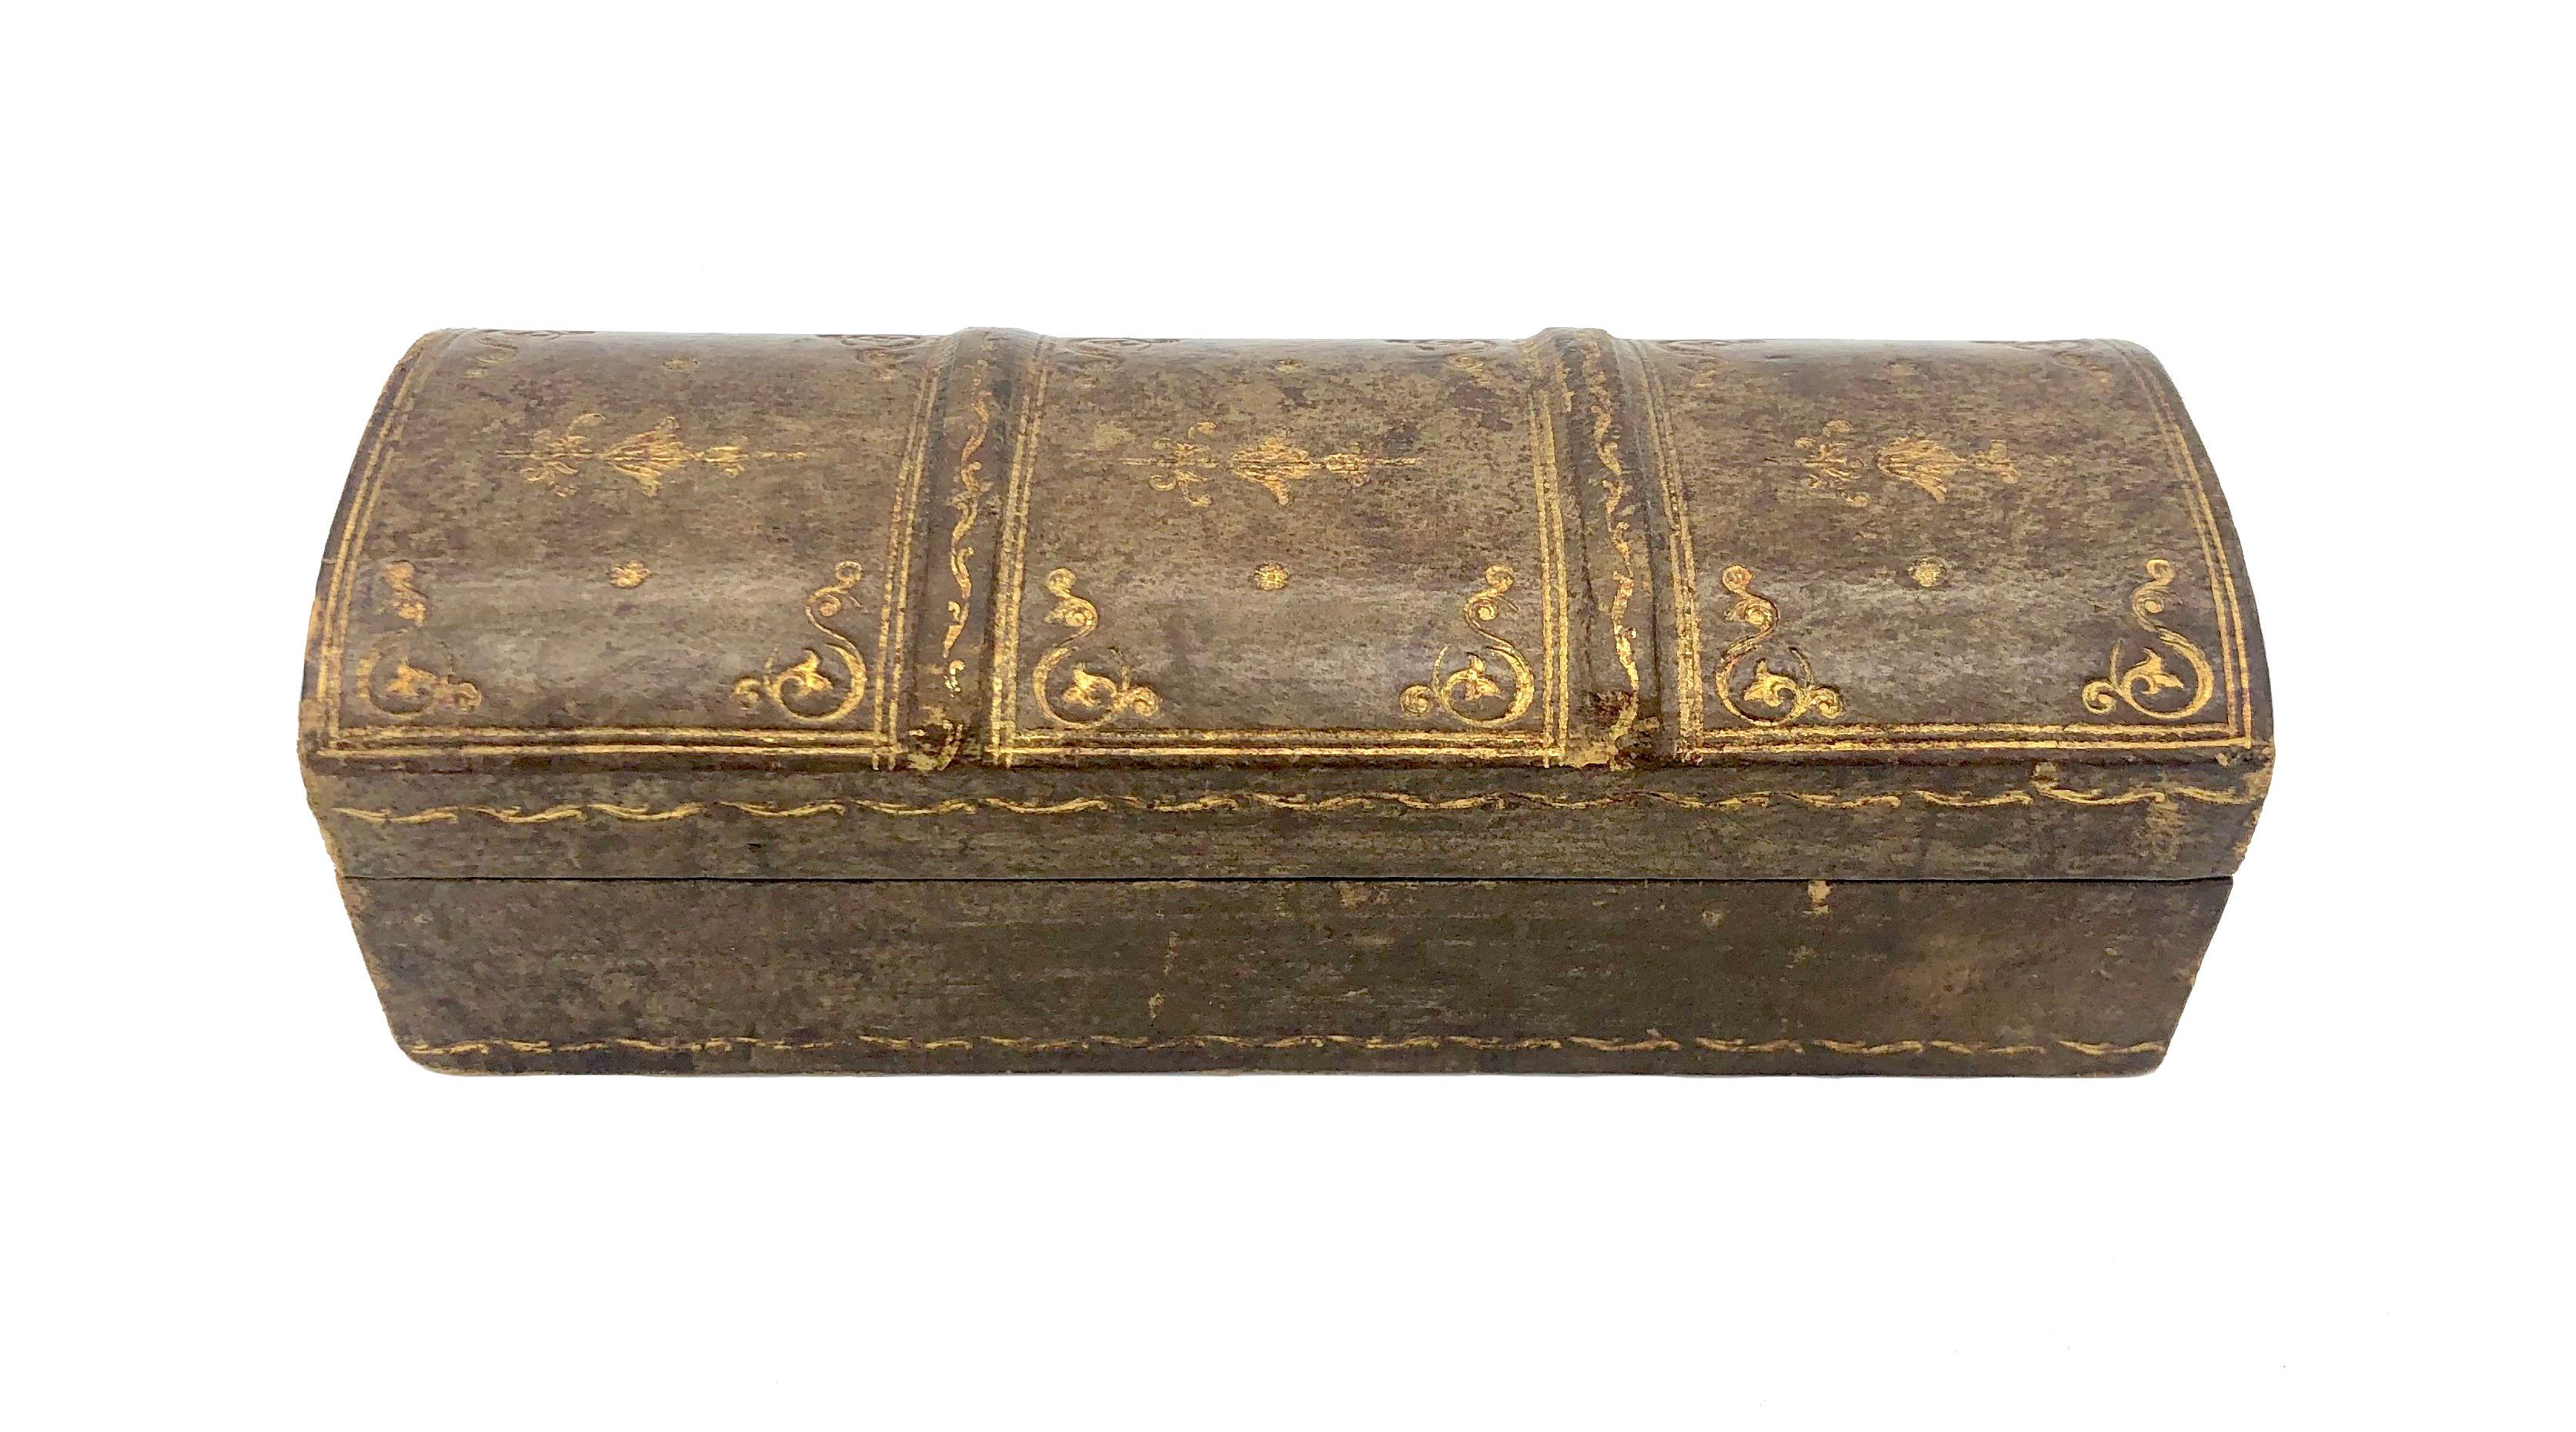 Cette élégante boîte a été fabriquée à la main dans les 15 dernières années du XIXe siècle. Il est fabriqué en cuir, en bois et en tissu. Les quatre compartiments inclinés suggèrent que cette boîte était utilisée pour les timbres. Ce bel objet à la